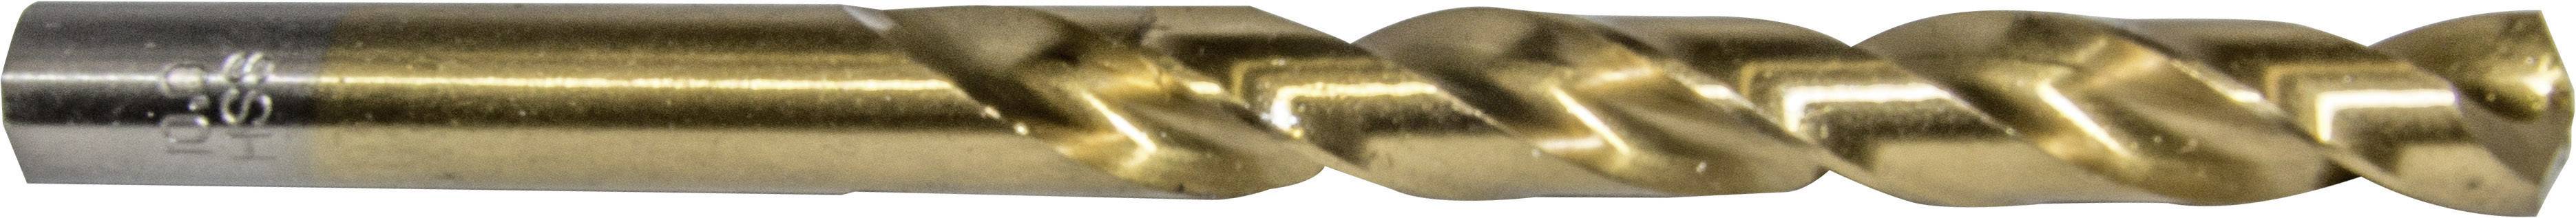 HELLER 29271 9 Metall-Spiralbohrer 1 Stück 8.5 mm Gesamtlänge 117 mm 1 St.